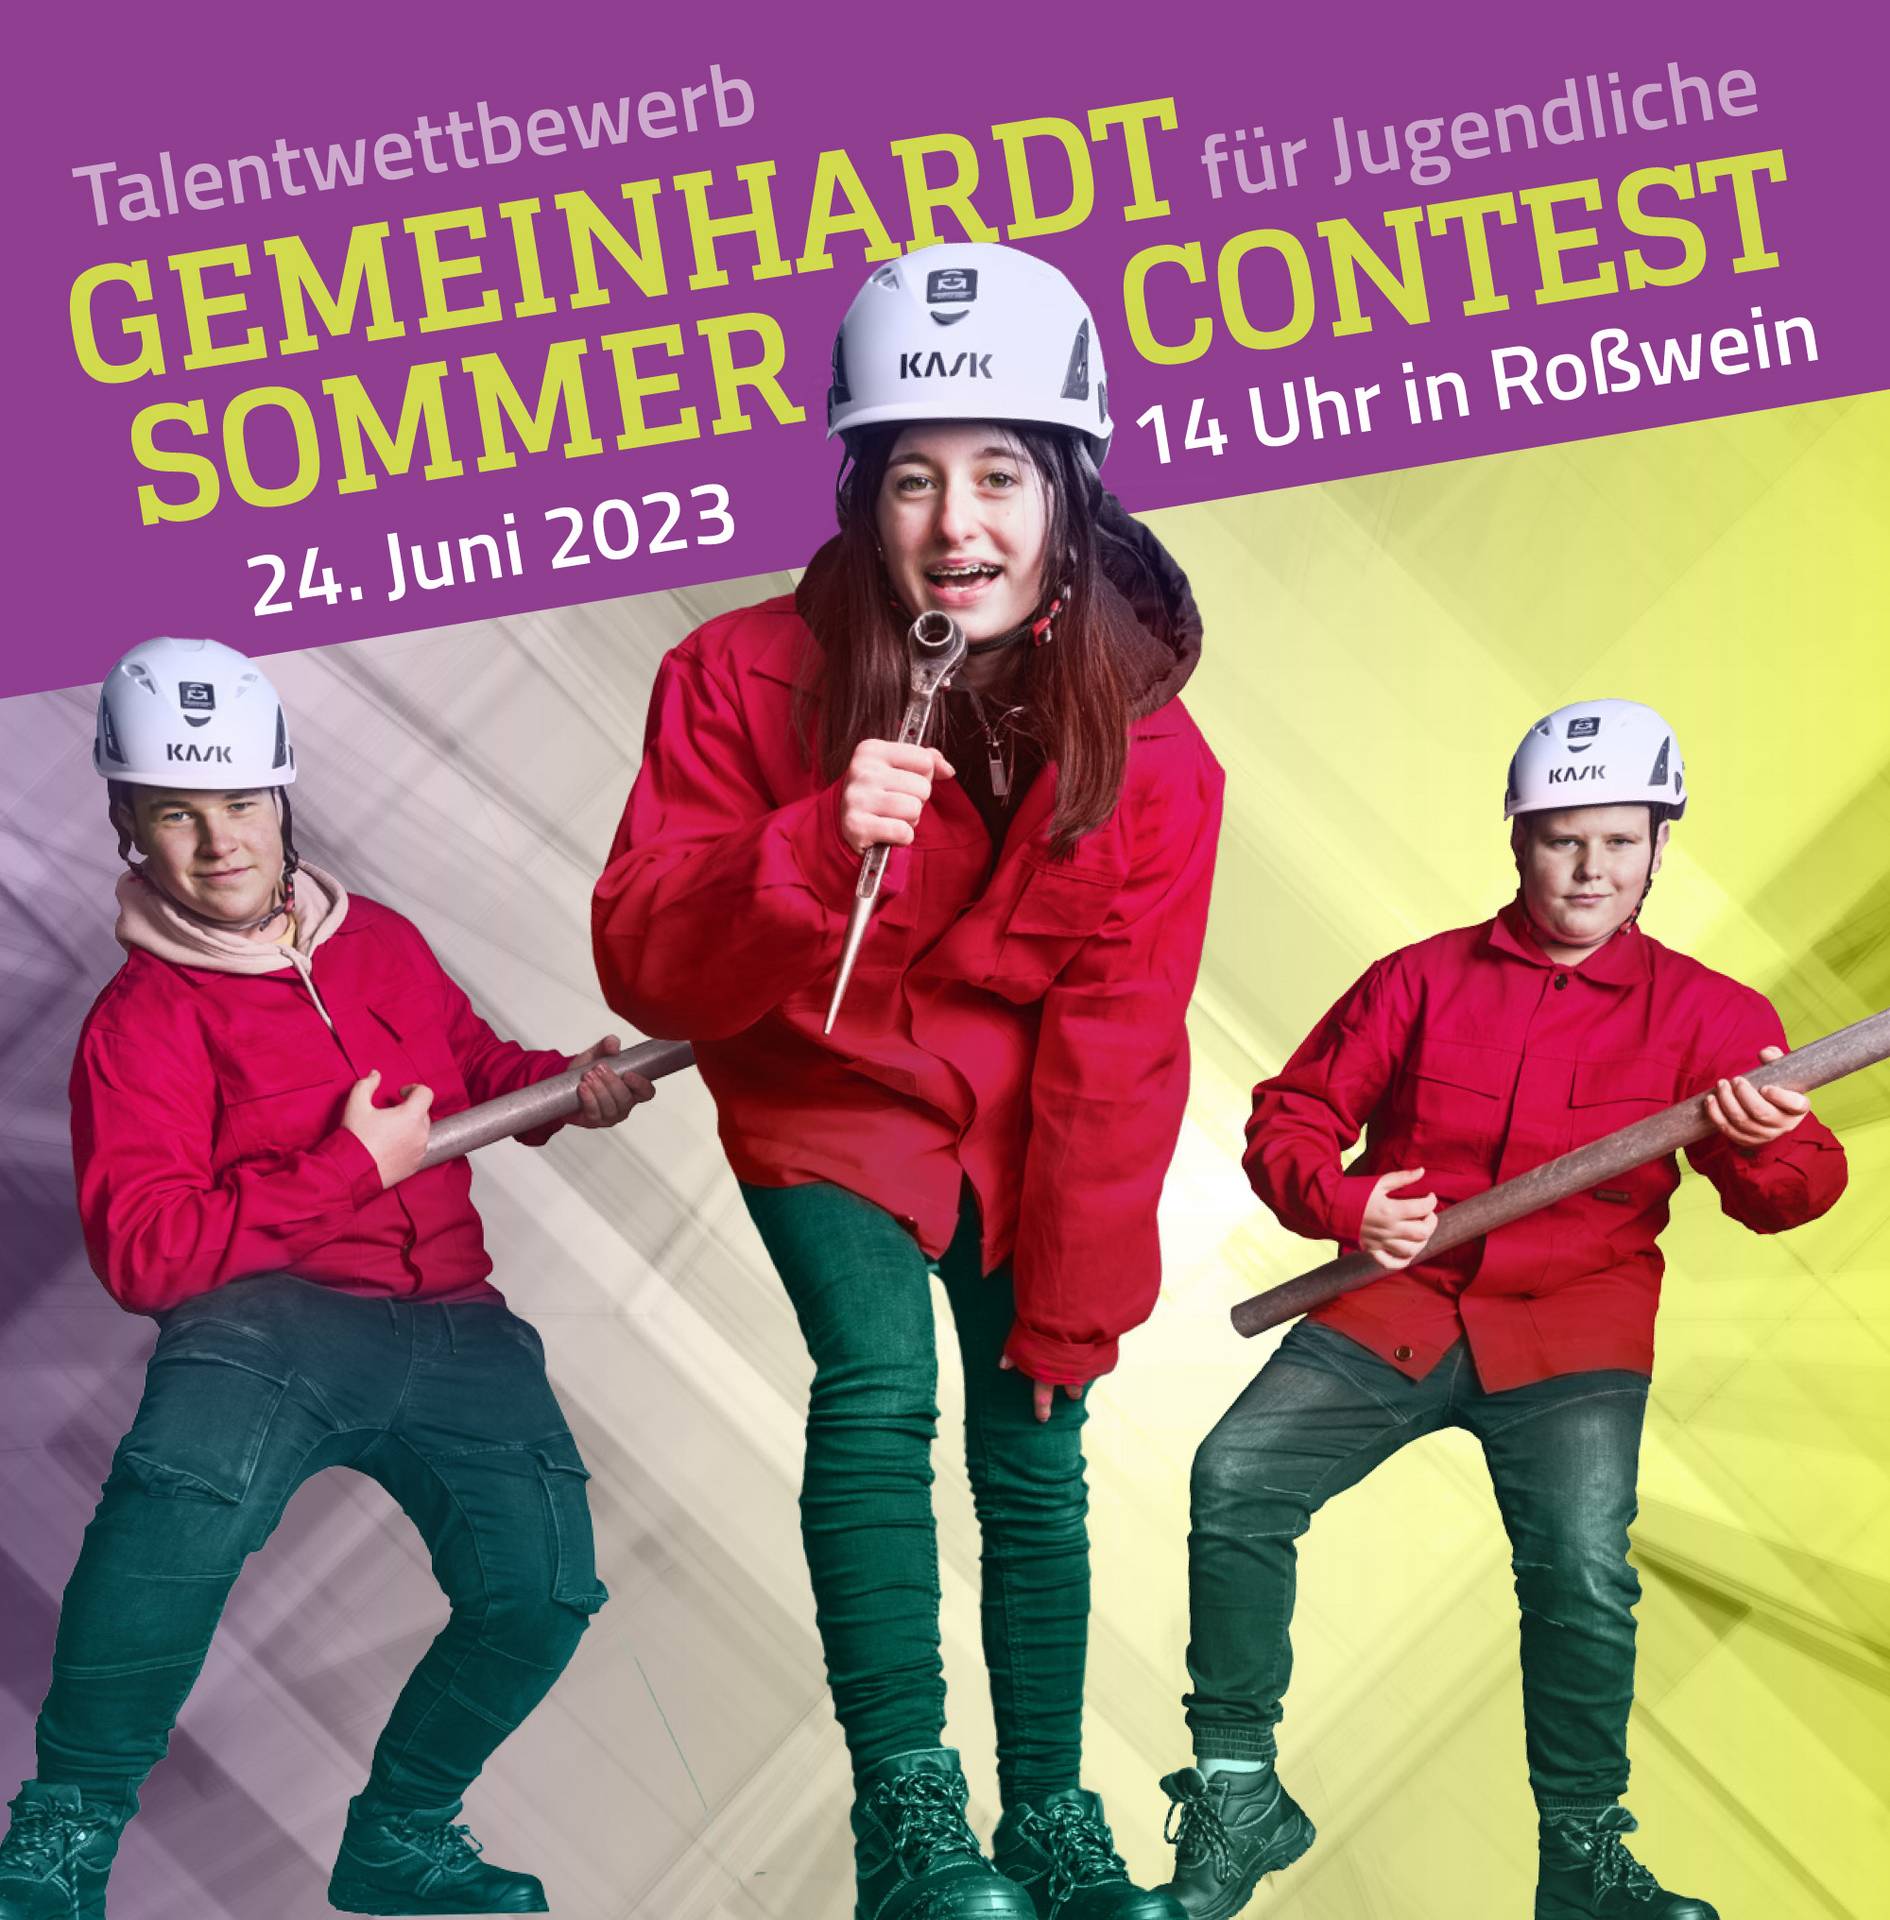 l_gemeinhardt_contest_teaser_230418-1 Praktikum im Gerüstbau bei Gemeinhardt Service - Aktuelles - Talentwettbewerb für Jugendliche